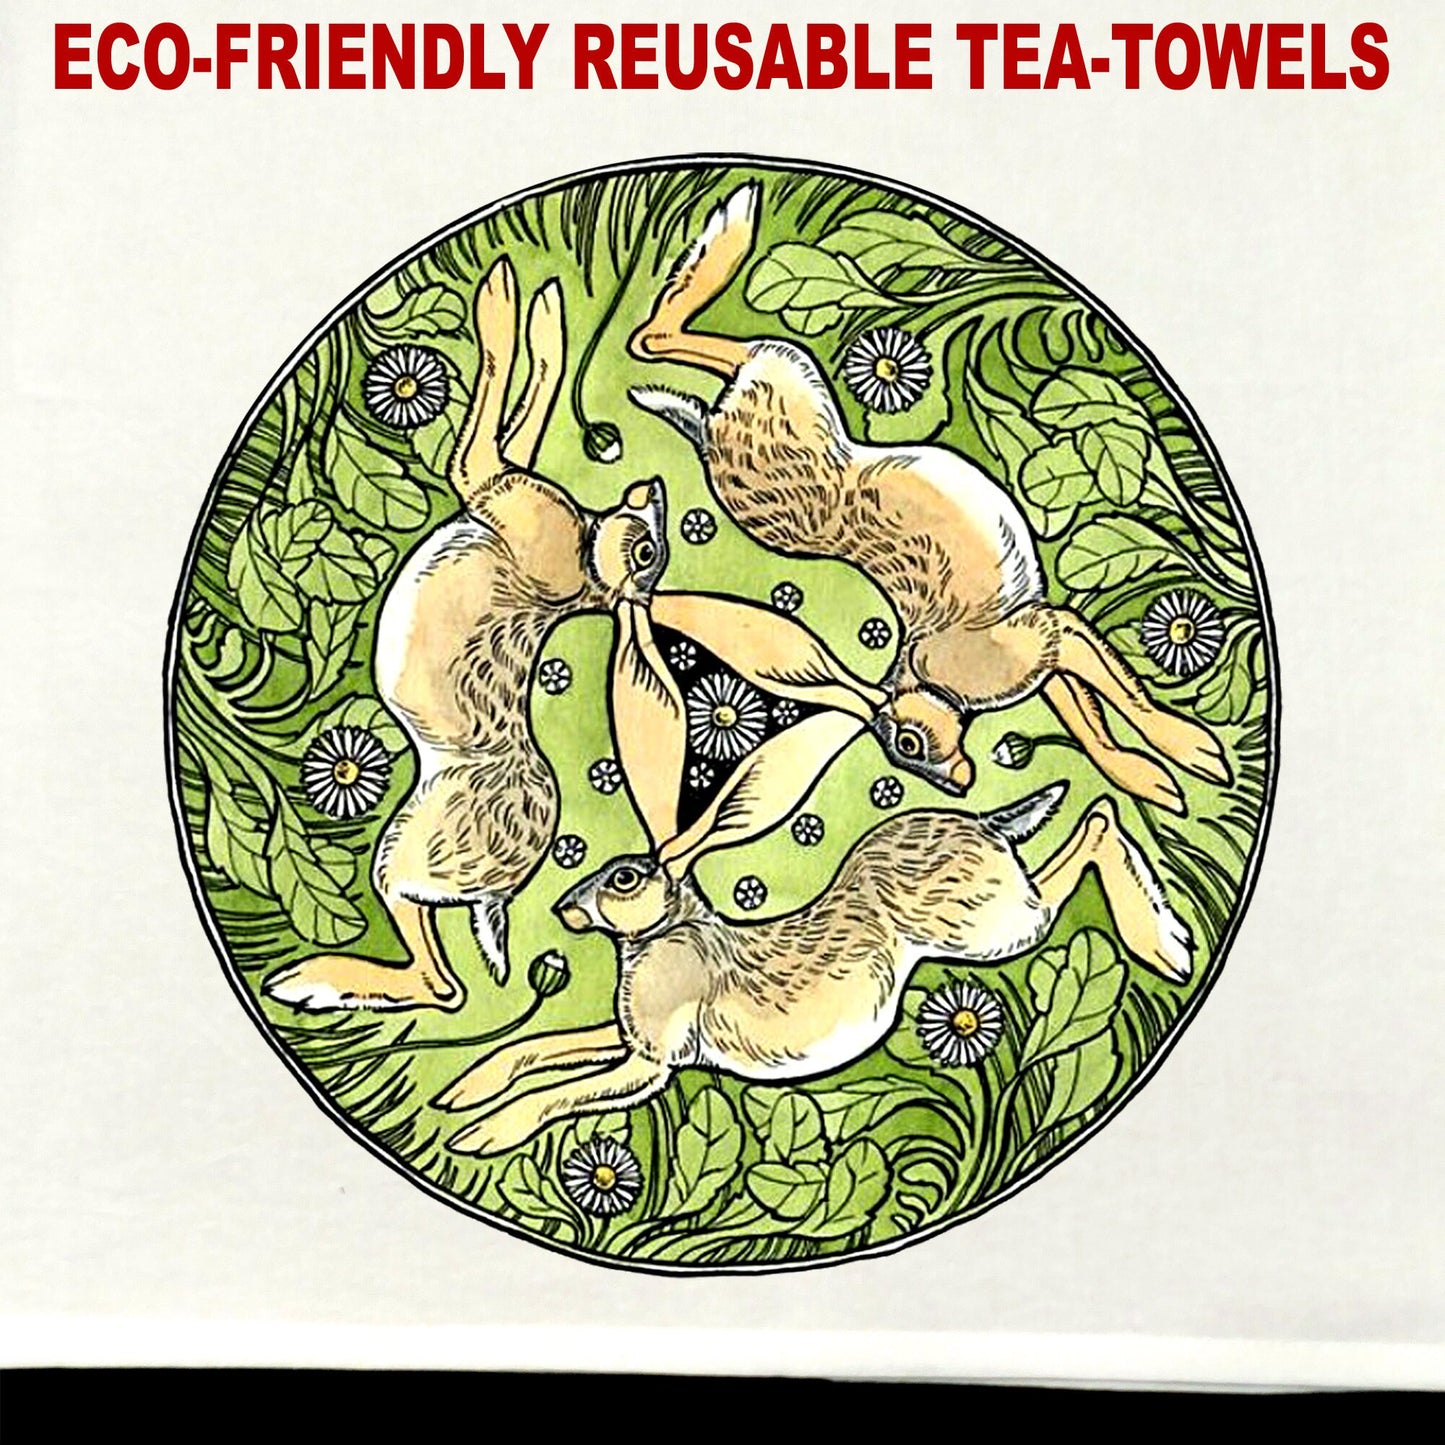 Knotwork Bunnies Tea Towel / tea towel / dish towel / hand towel / reusable wipe / kitchen gift / kitchen deco